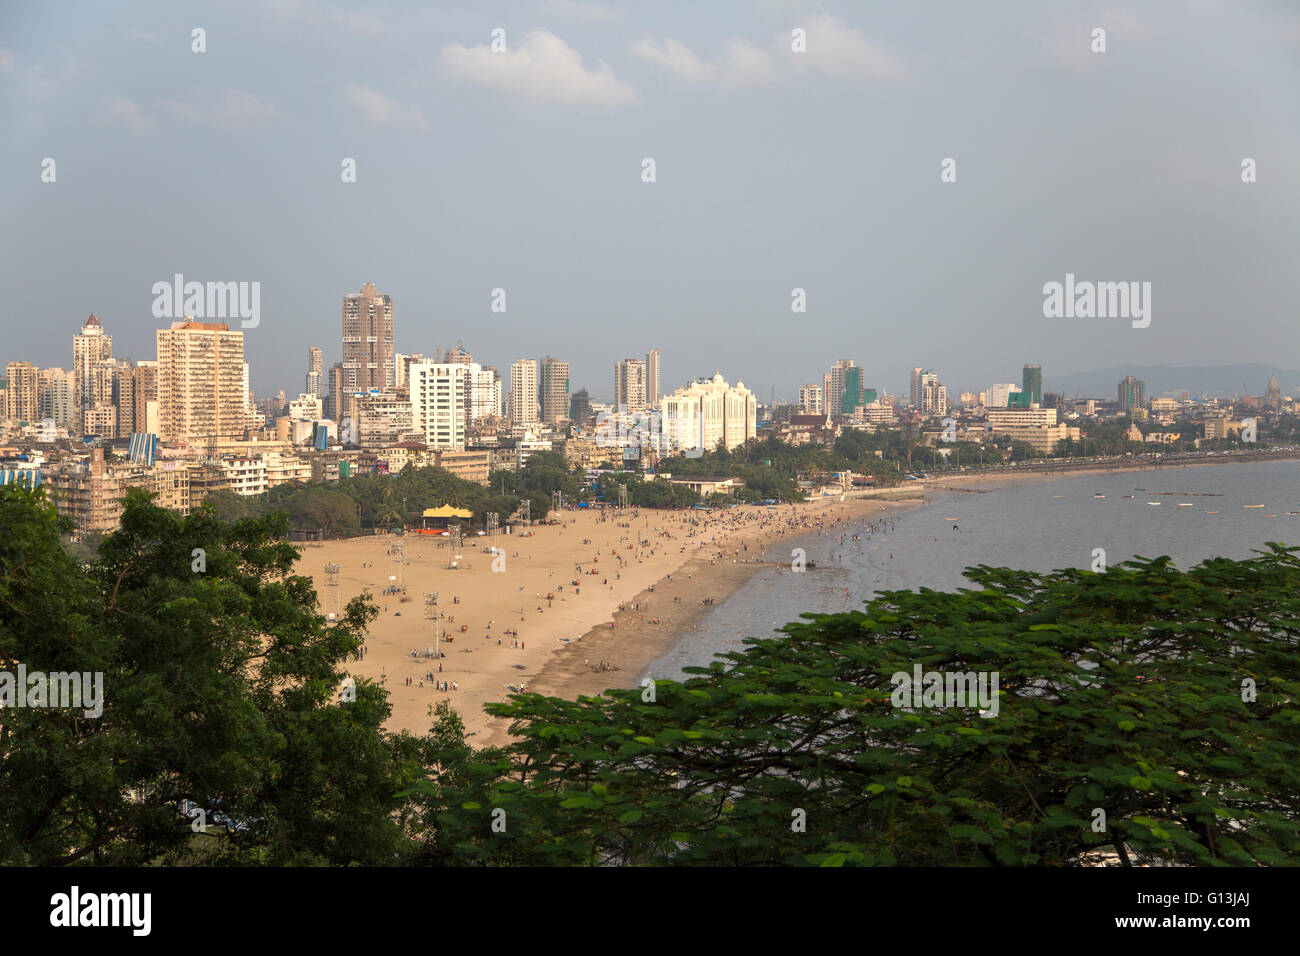 El paisaje de la ciudad de Mumbai (Bombay) en India Foto de stock